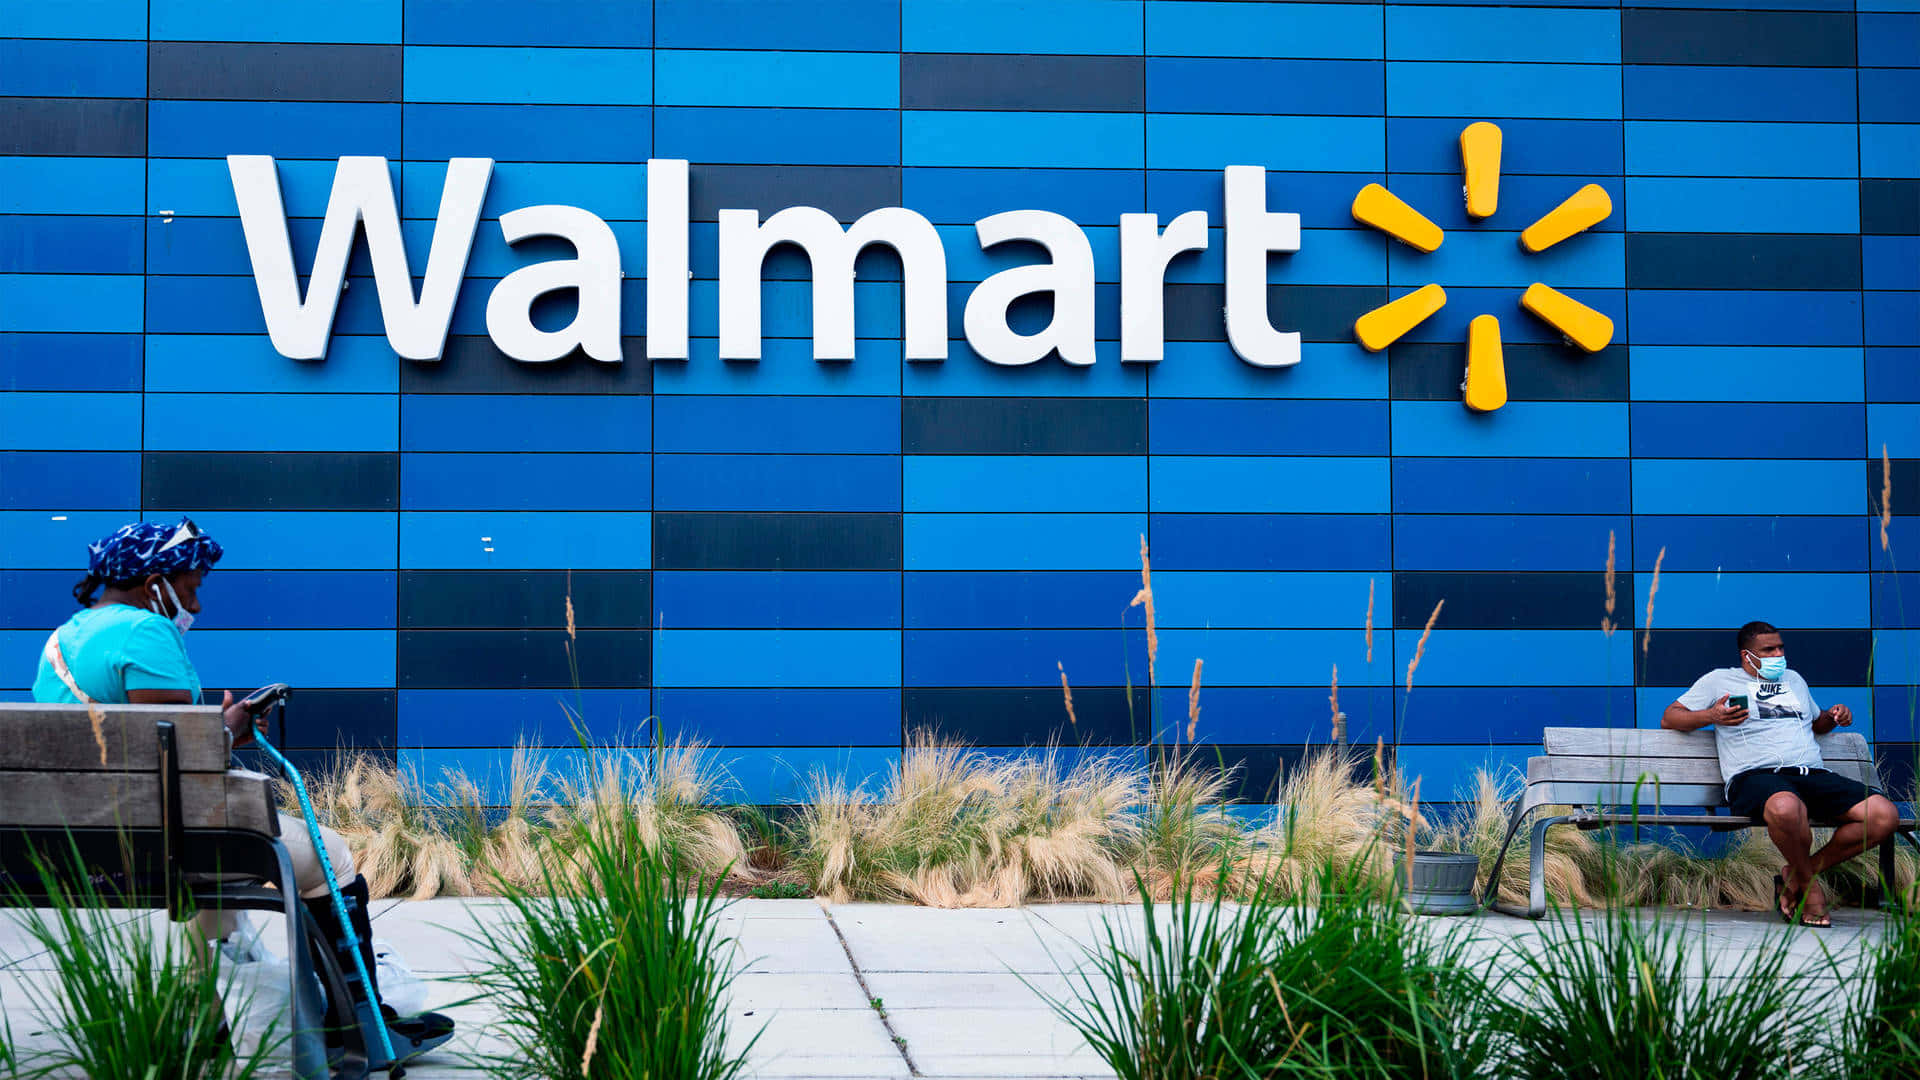 Ilnuovo Logo Di Walmart È Visibile Nello Sfondo.